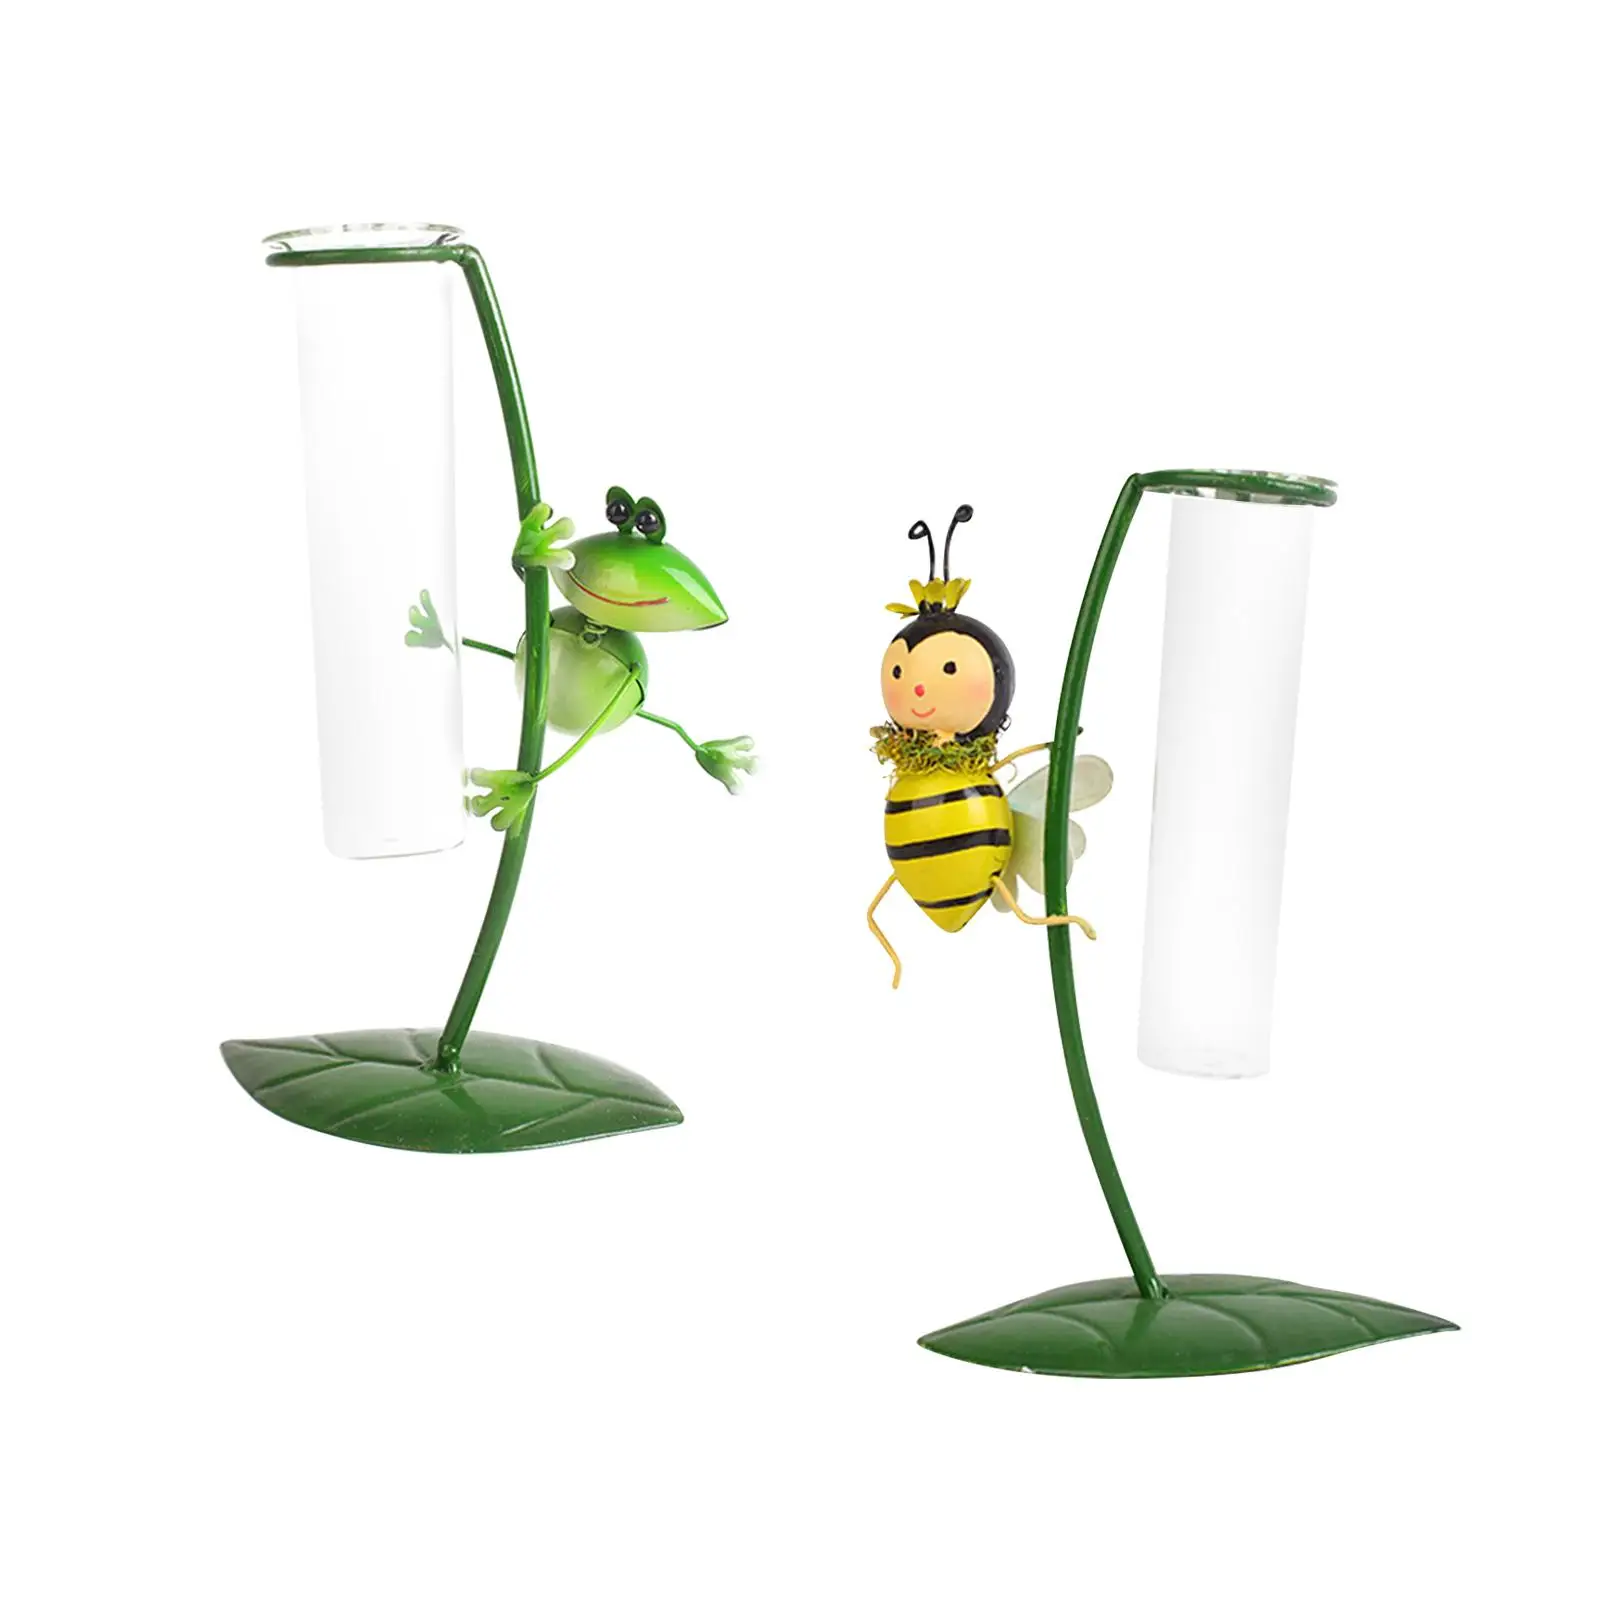 Test Tube Flower Vase Holder Flower Arrangement Decorative Stand Fittings Flower Vase for Table Bedroom Indoor Birthday Office